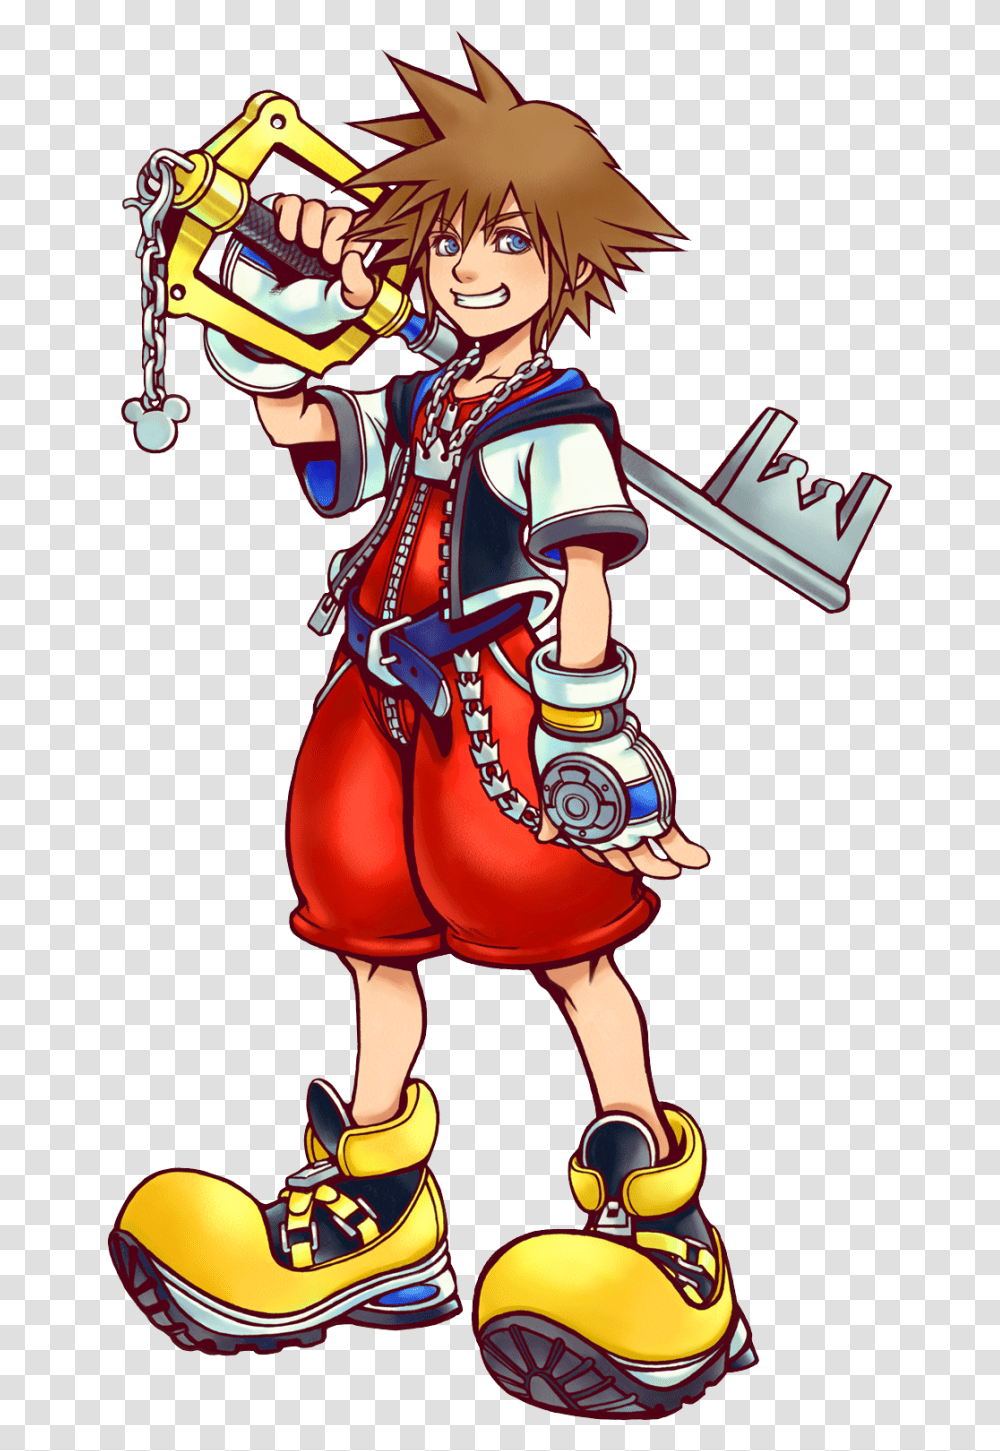 Sora Kingdom Hearts Character, Person, Book, Comics, Performer Transparent Png